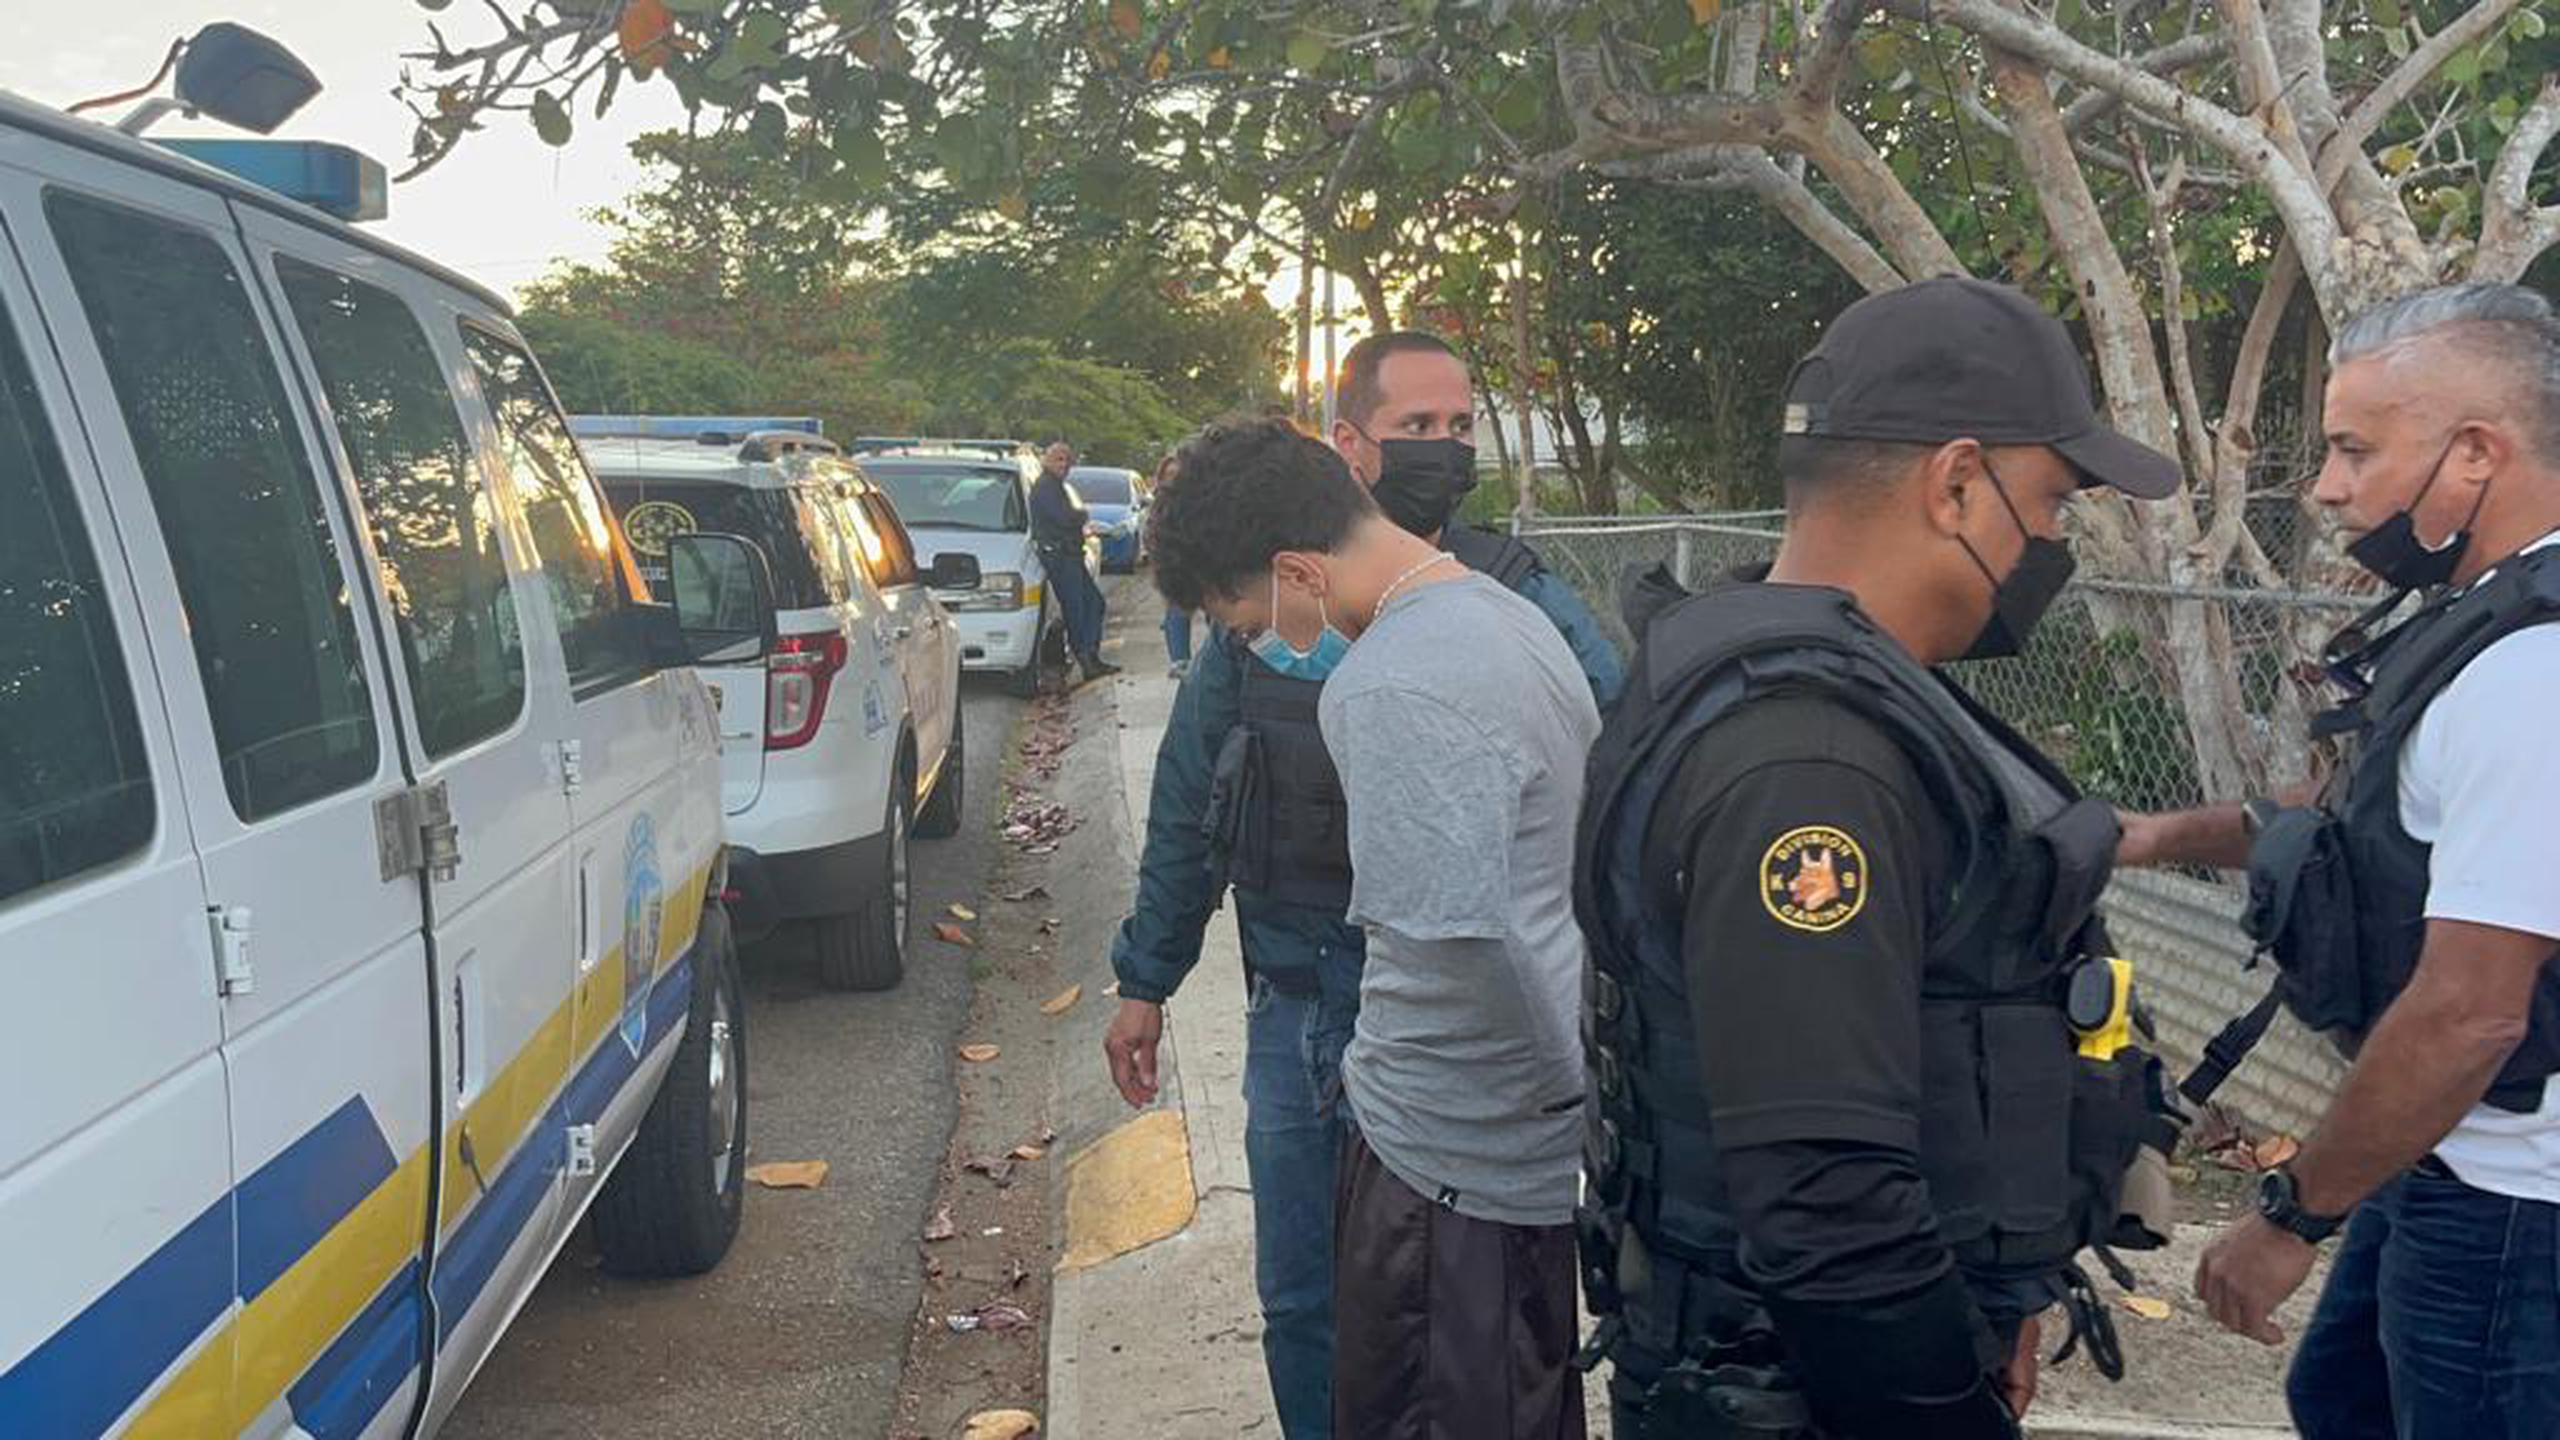 La División de Drogas y Narcóticos de Guayama diligenció una orden de allanamiento y arrestó a un joven que había sido reportado desaparecido por la posesión de un rifle.